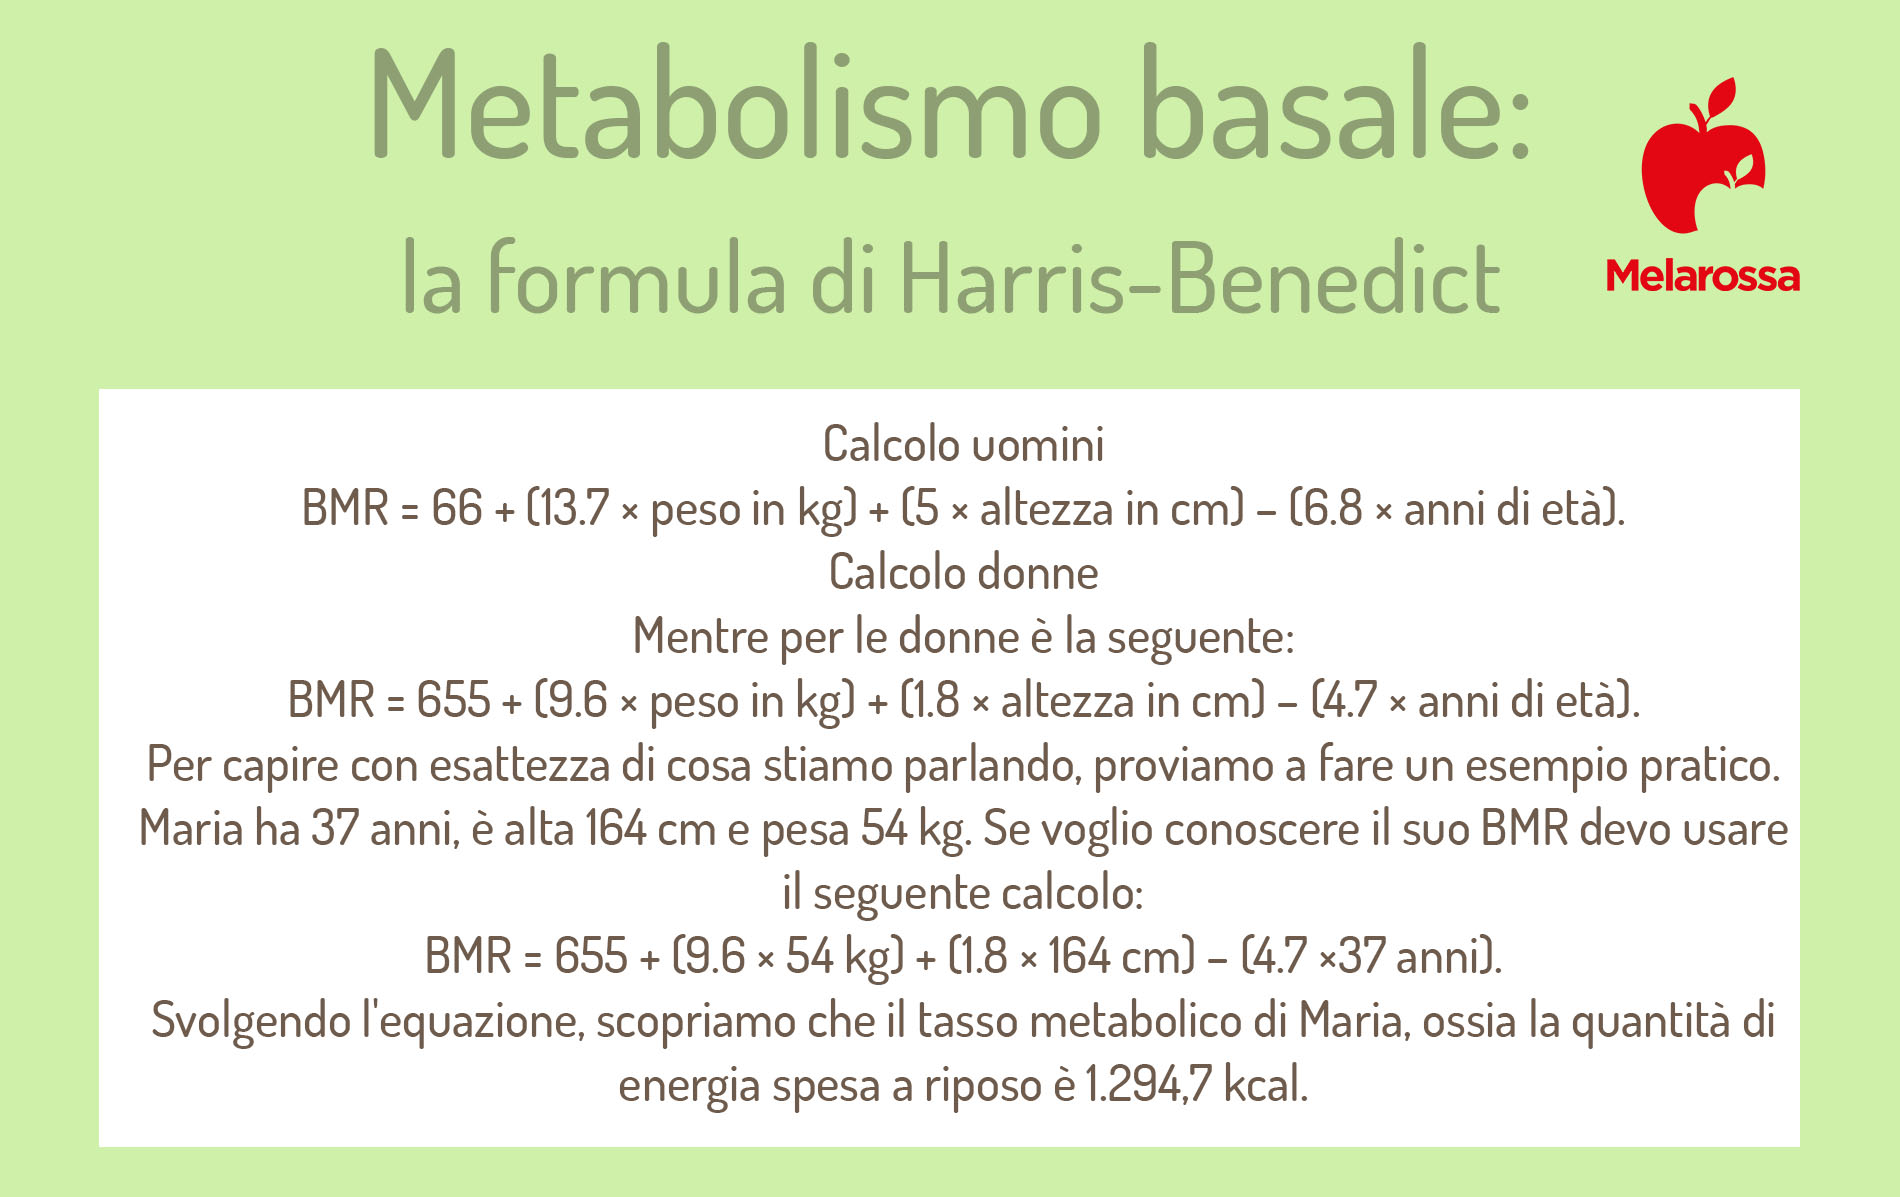 metabolismo basale: come calcolarlo: formula di Harris benedict